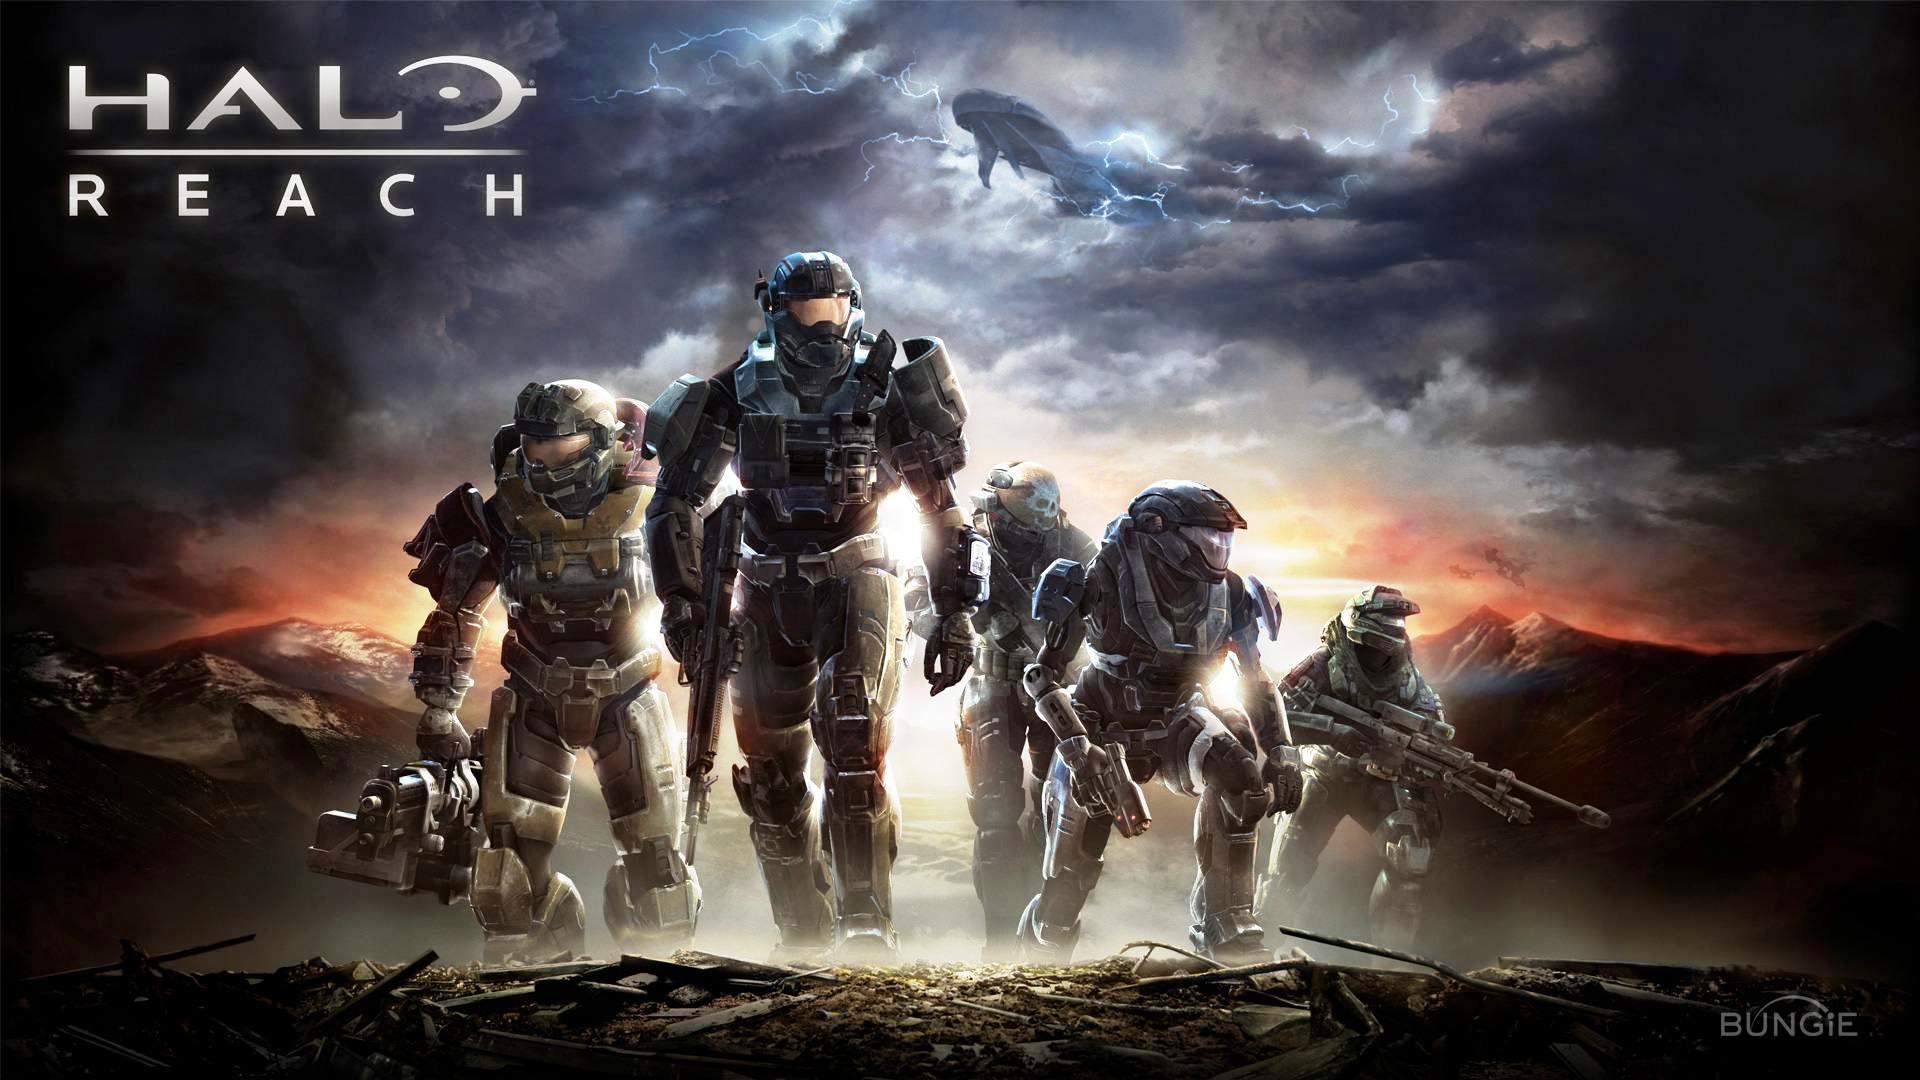 Halo: Reach Firefight PC Beta / Flight telah diluncurkan